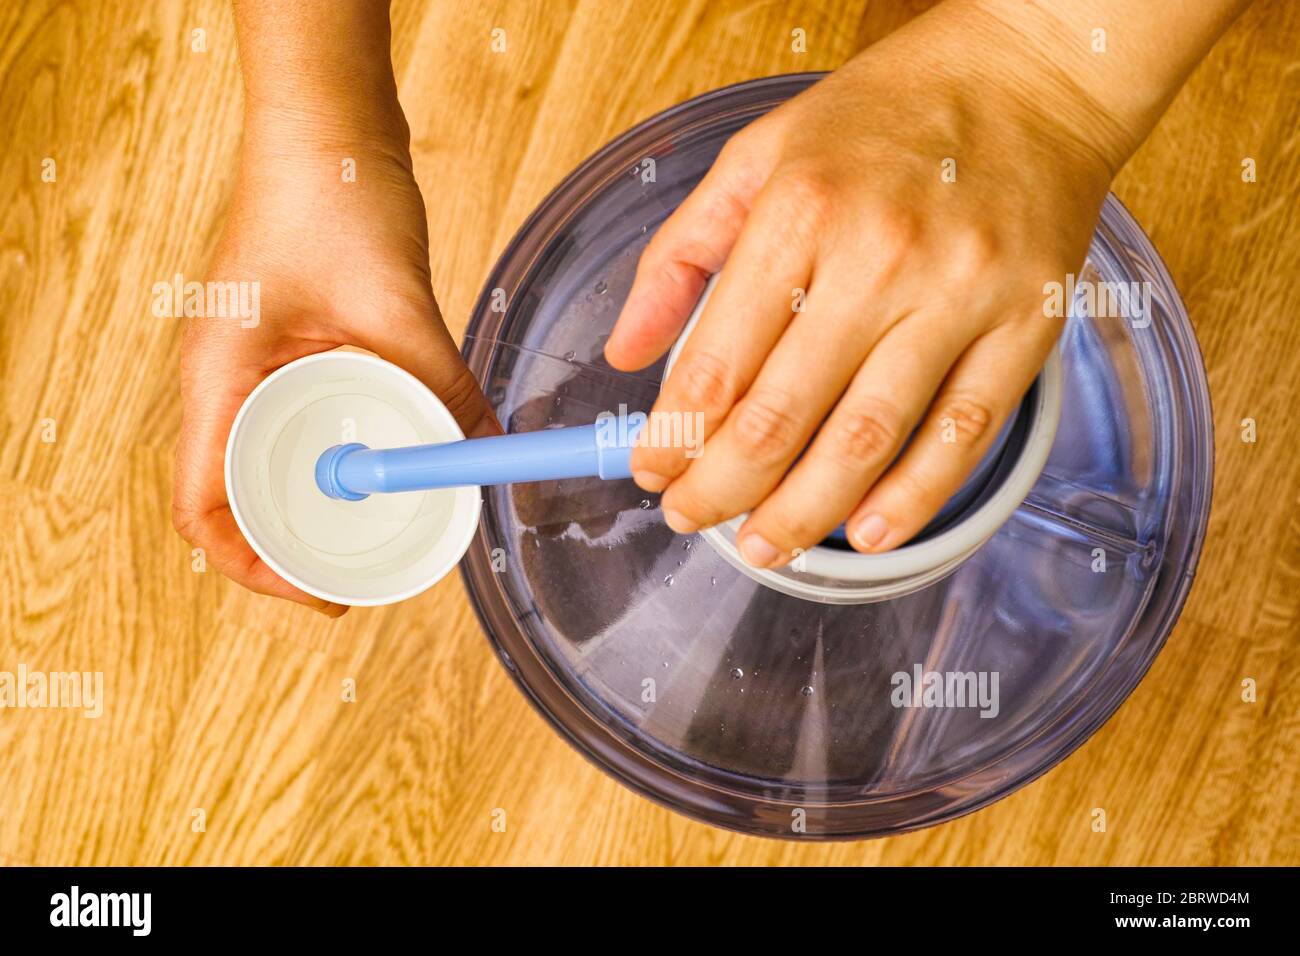 Personne mains verser l'eau dans le gobelet en papier de la bouteille avec pompe à eau. Vue de dessus. Banque D'Images